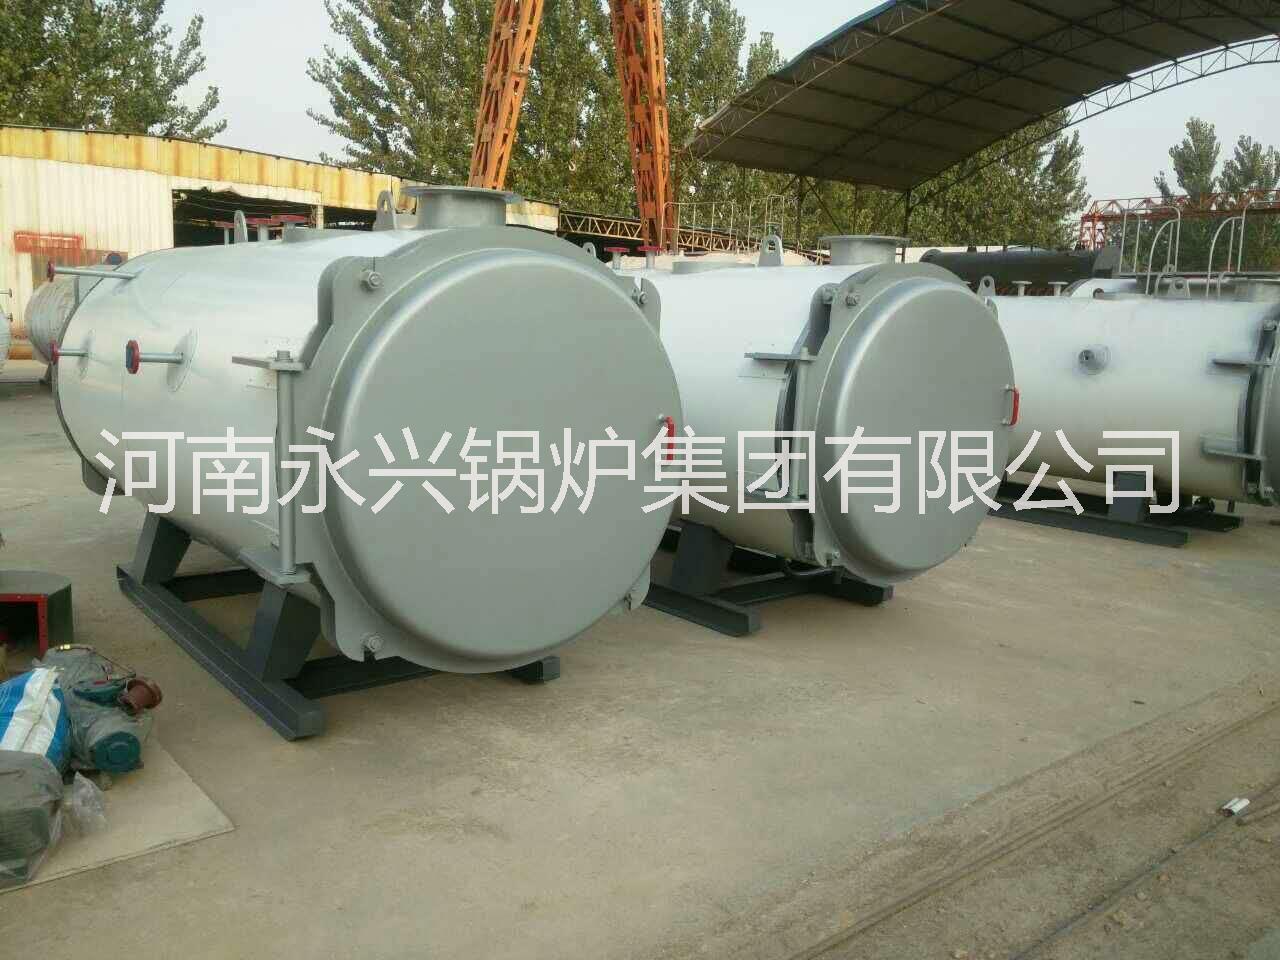 江西大型卧式燃气锅炉生产厂家 江西哪里有永兴燃气热水锅炉厂家图片